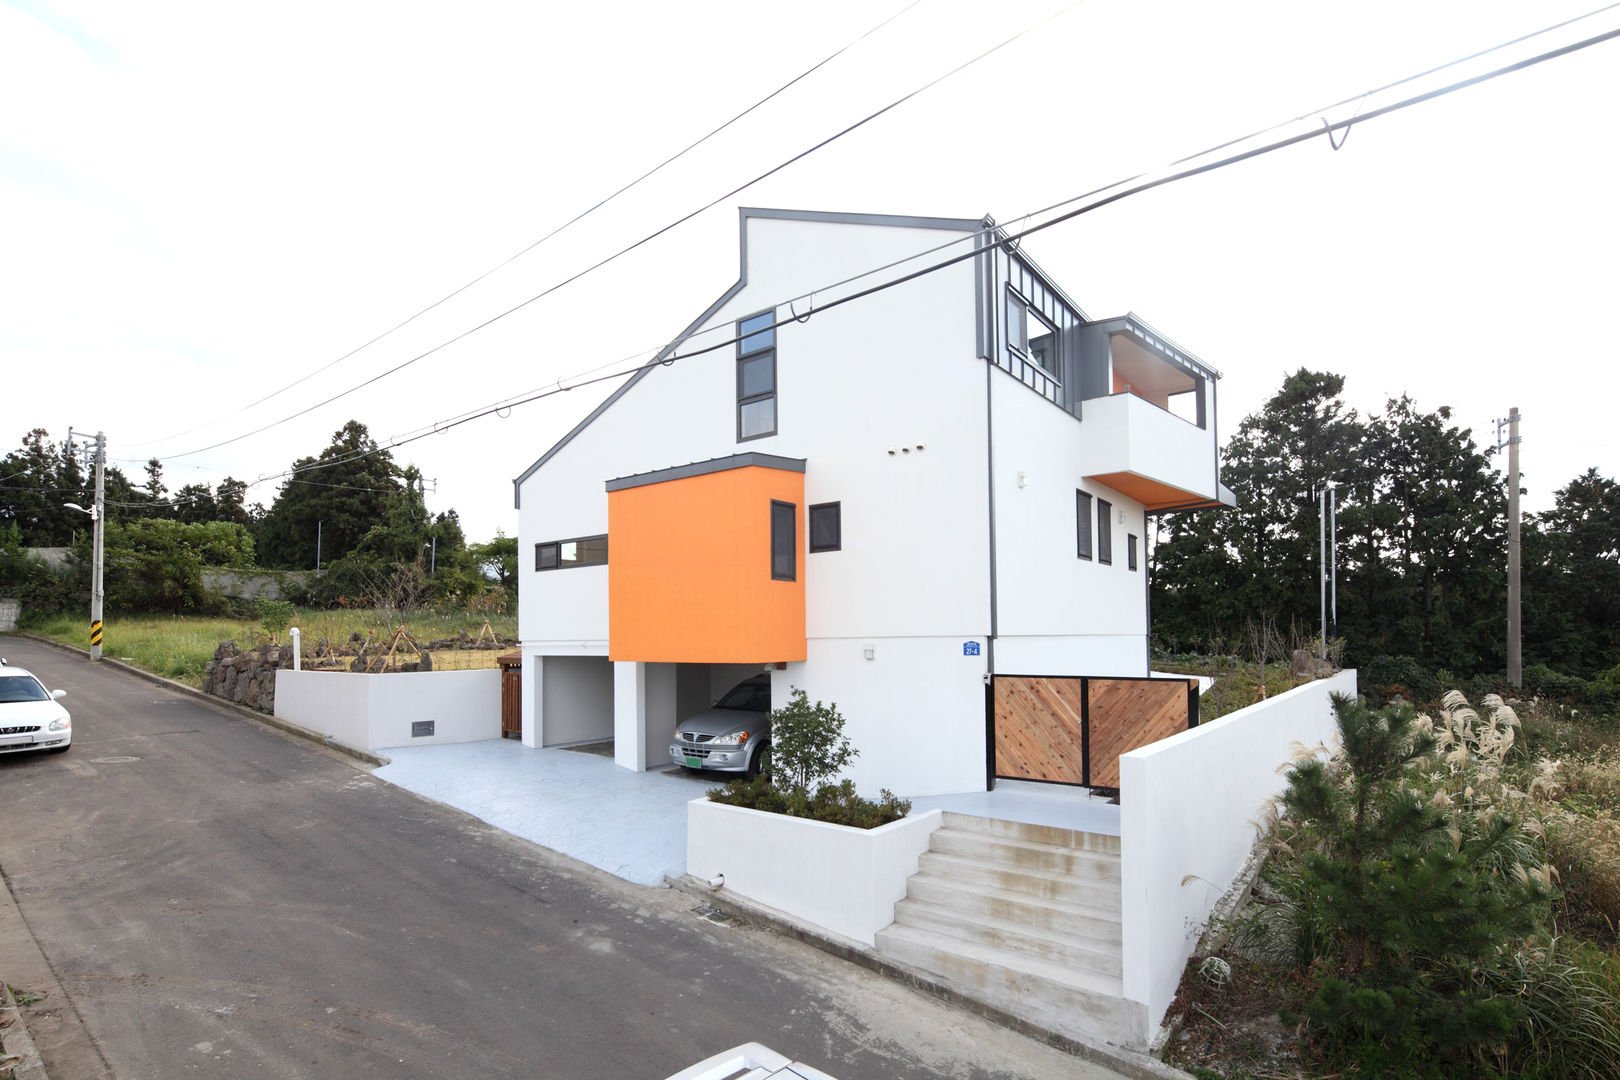 풍광좋은 제주 개러지 하우스, 주택설계전문 디자인그룹 홈스타일토토 주택설계전문 디자인그룹 홈스타일토토 Casas modernas